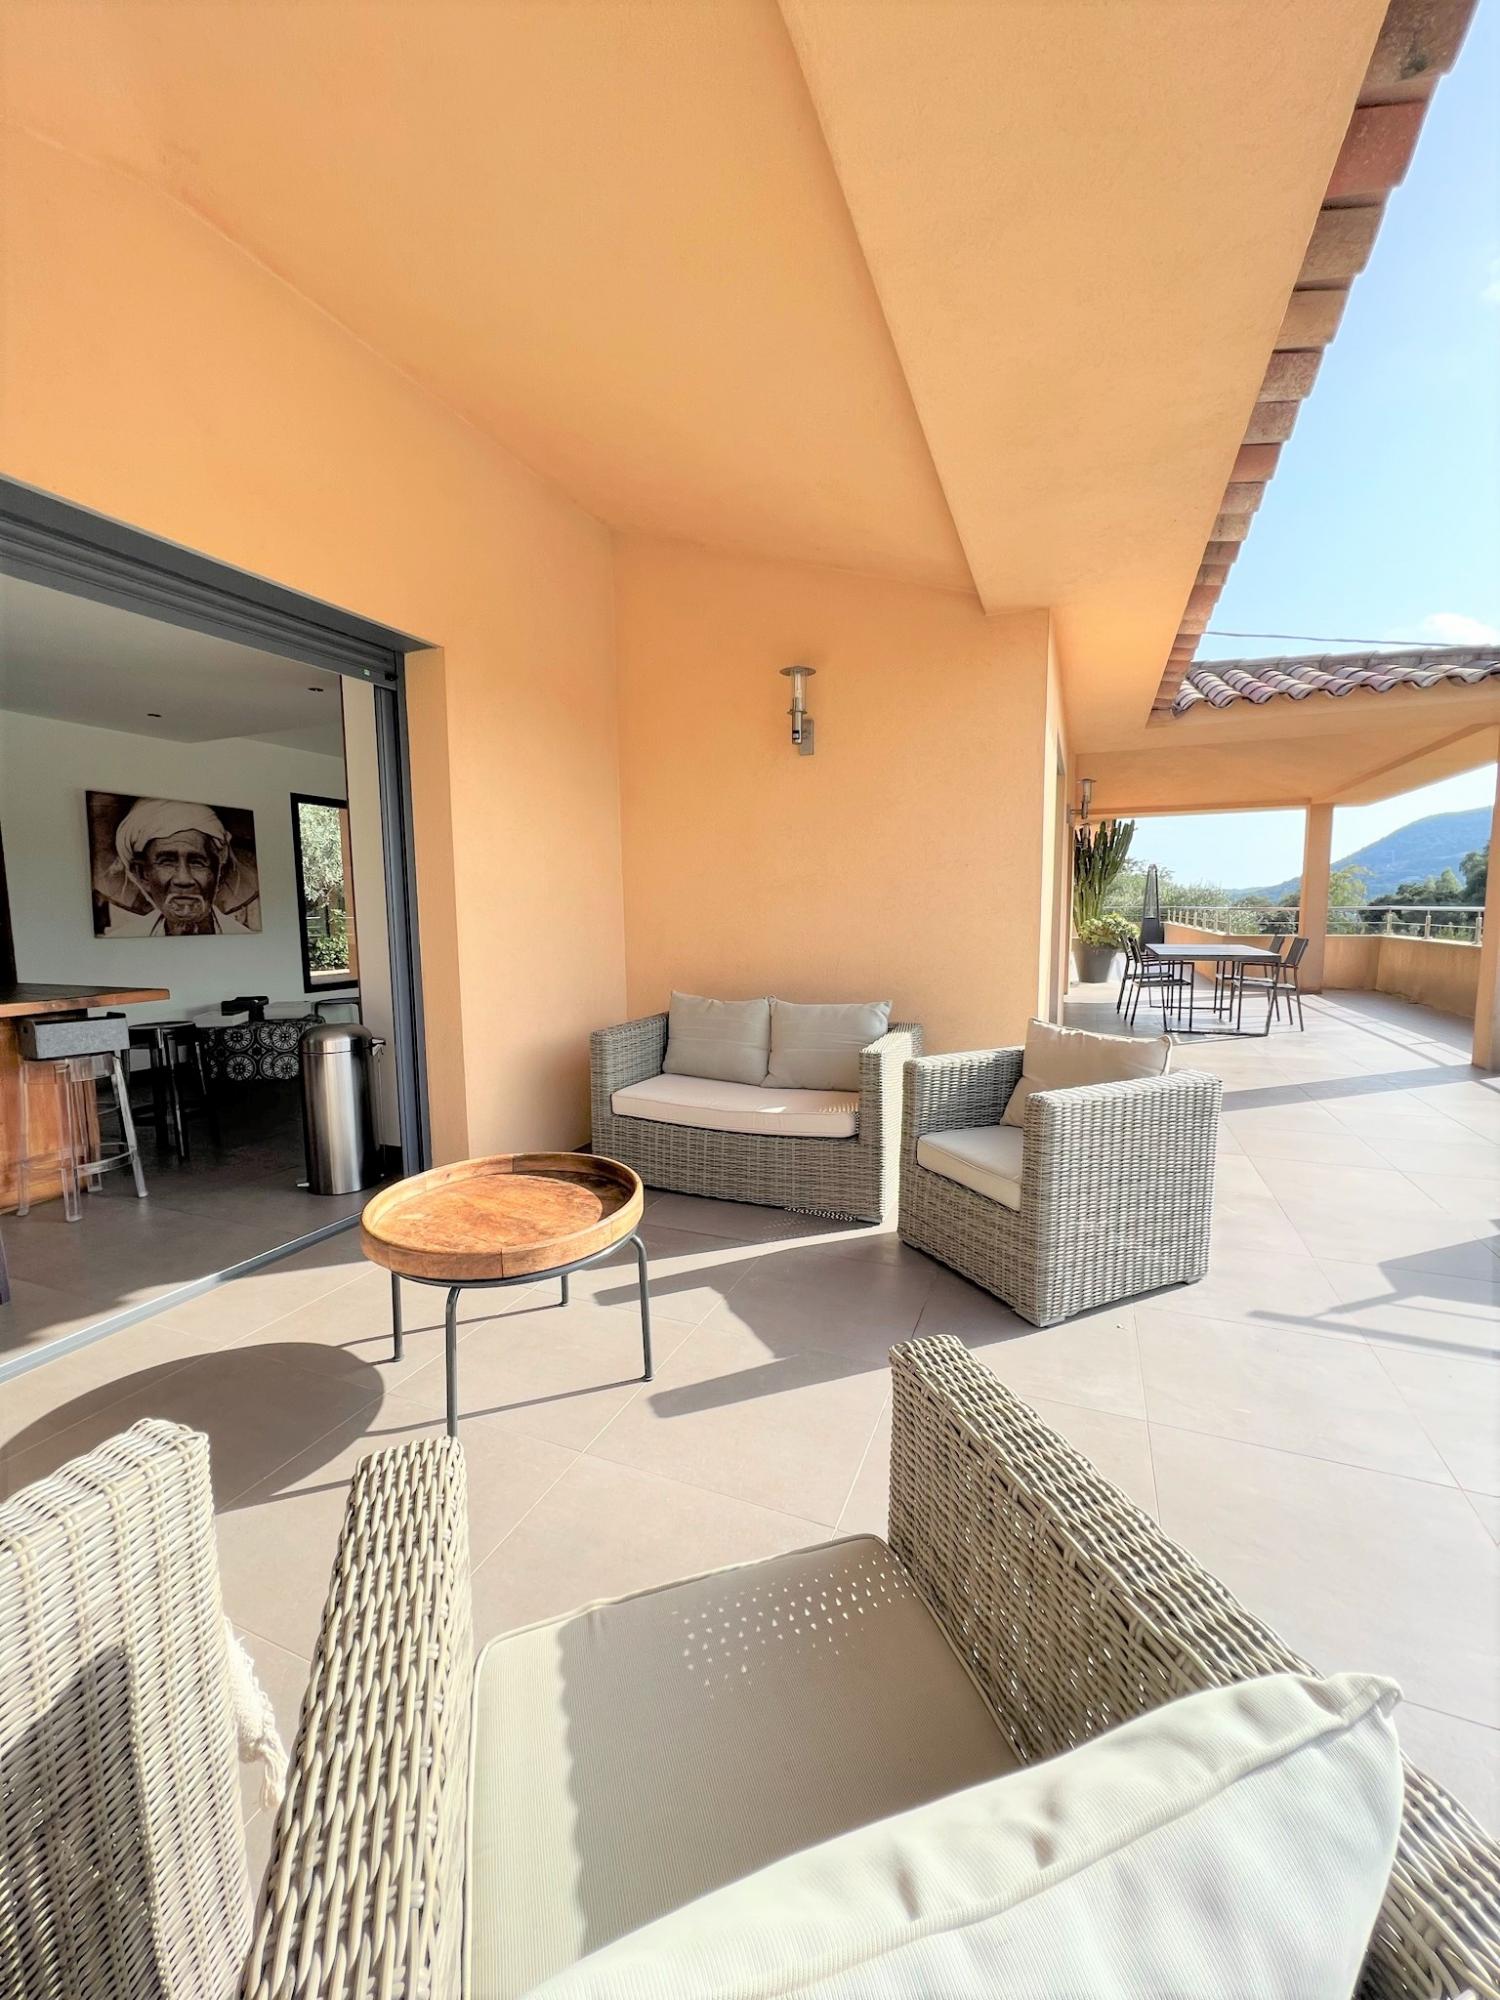 Property Image 2 - Villa Alivu in Pinarello